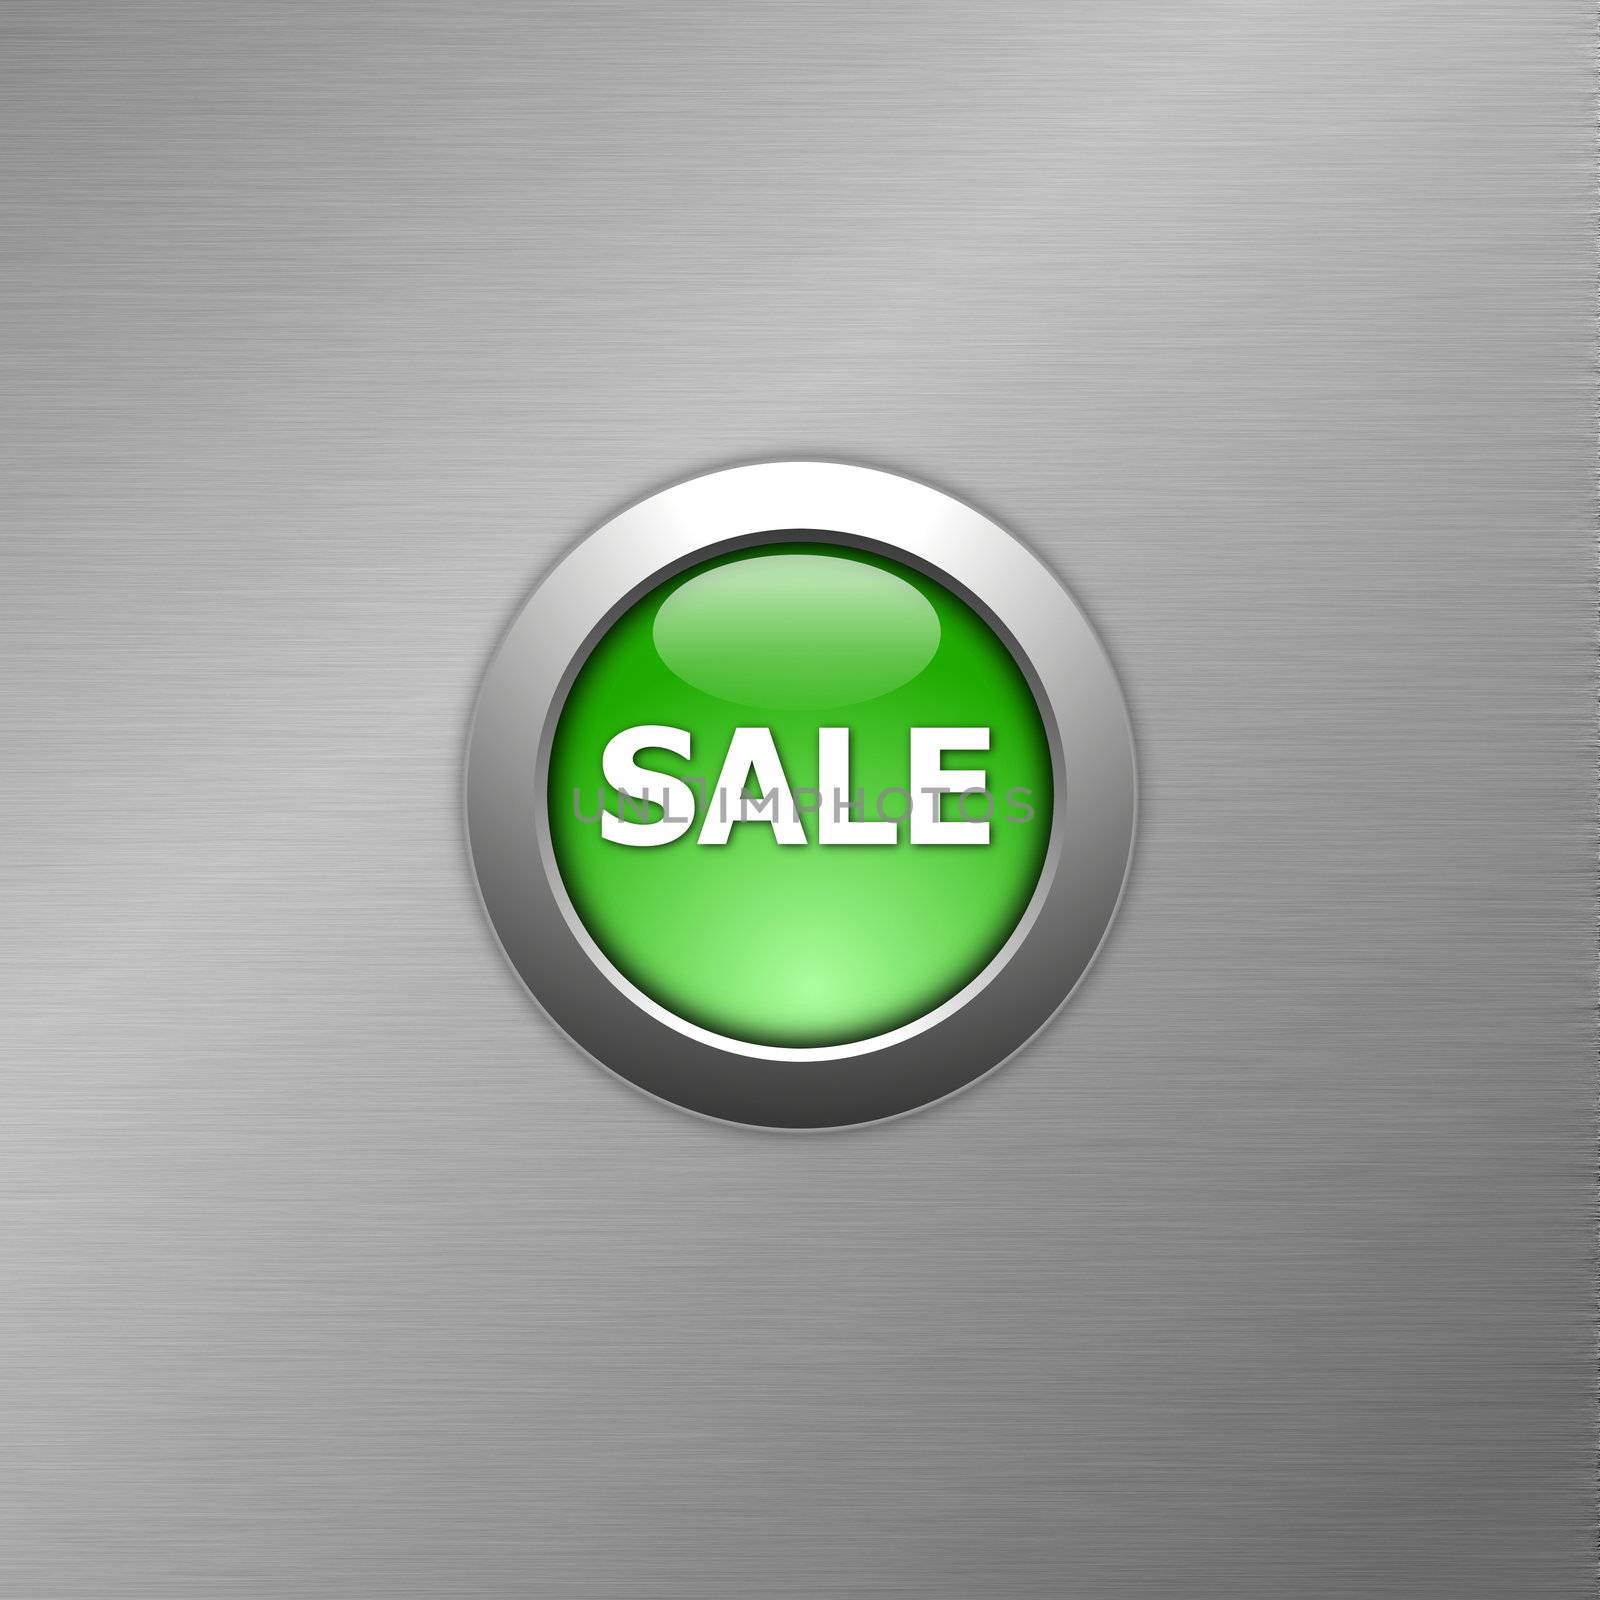 green sale button by gunnar3000